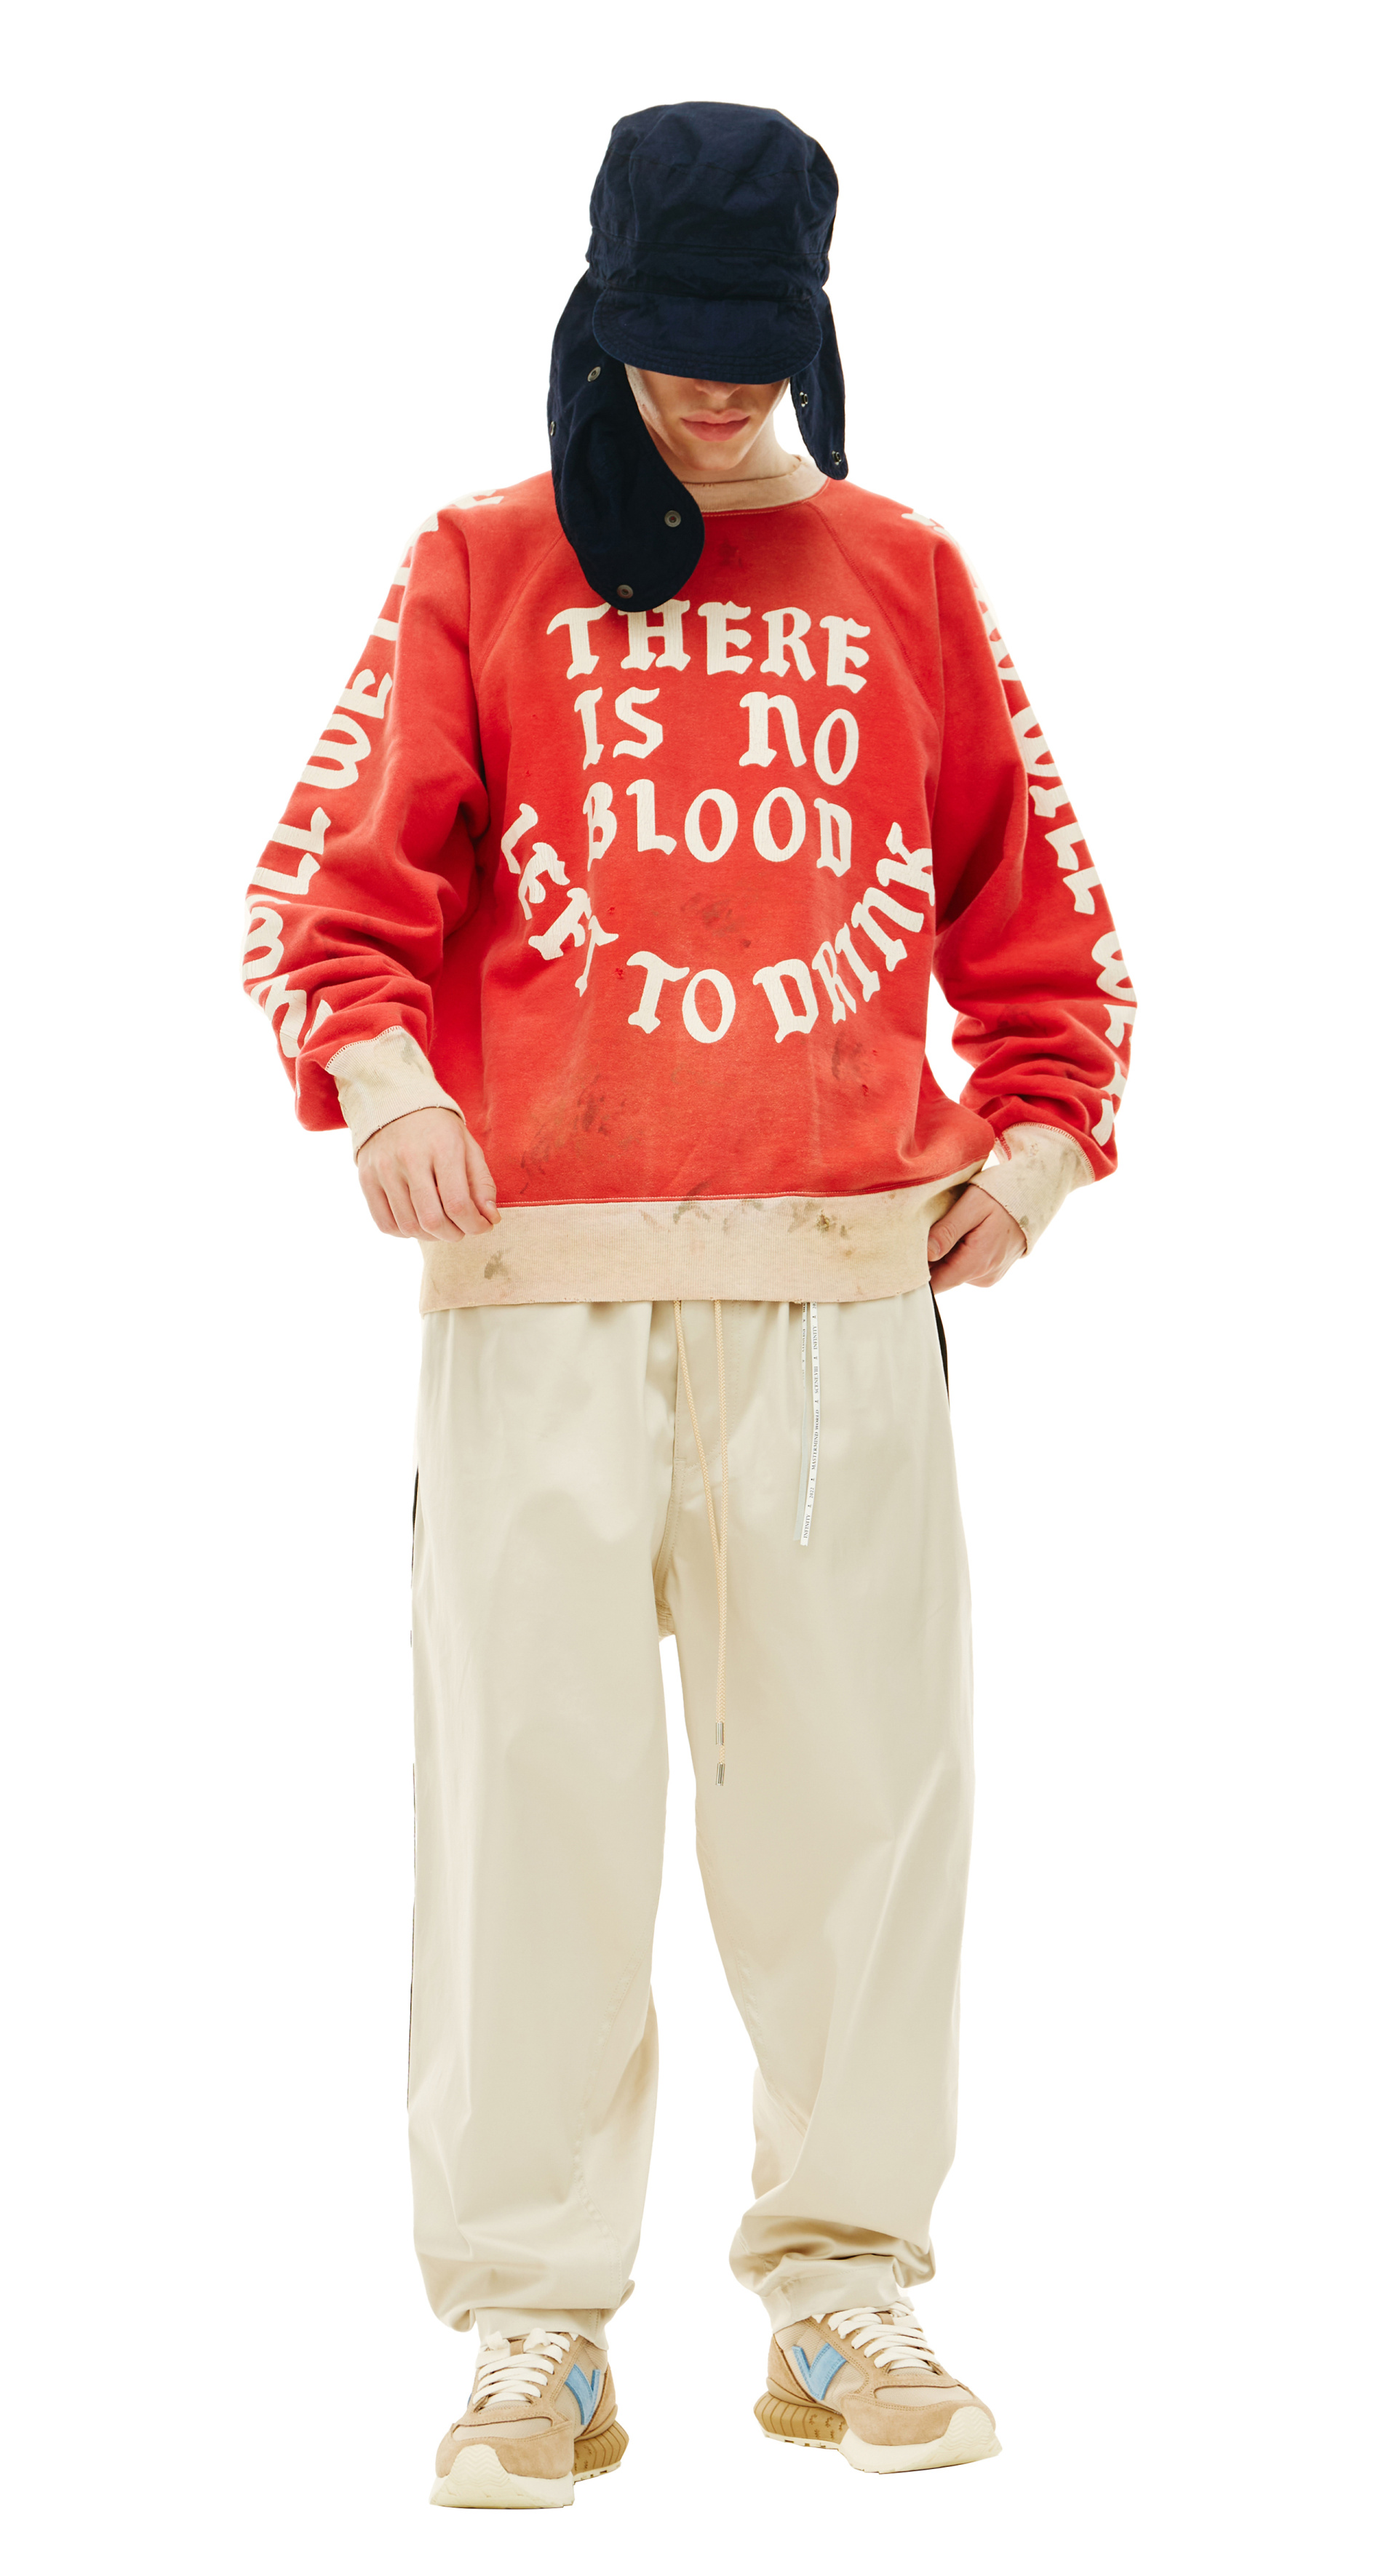 Shop Saint Michael hoodies for men online at SV77